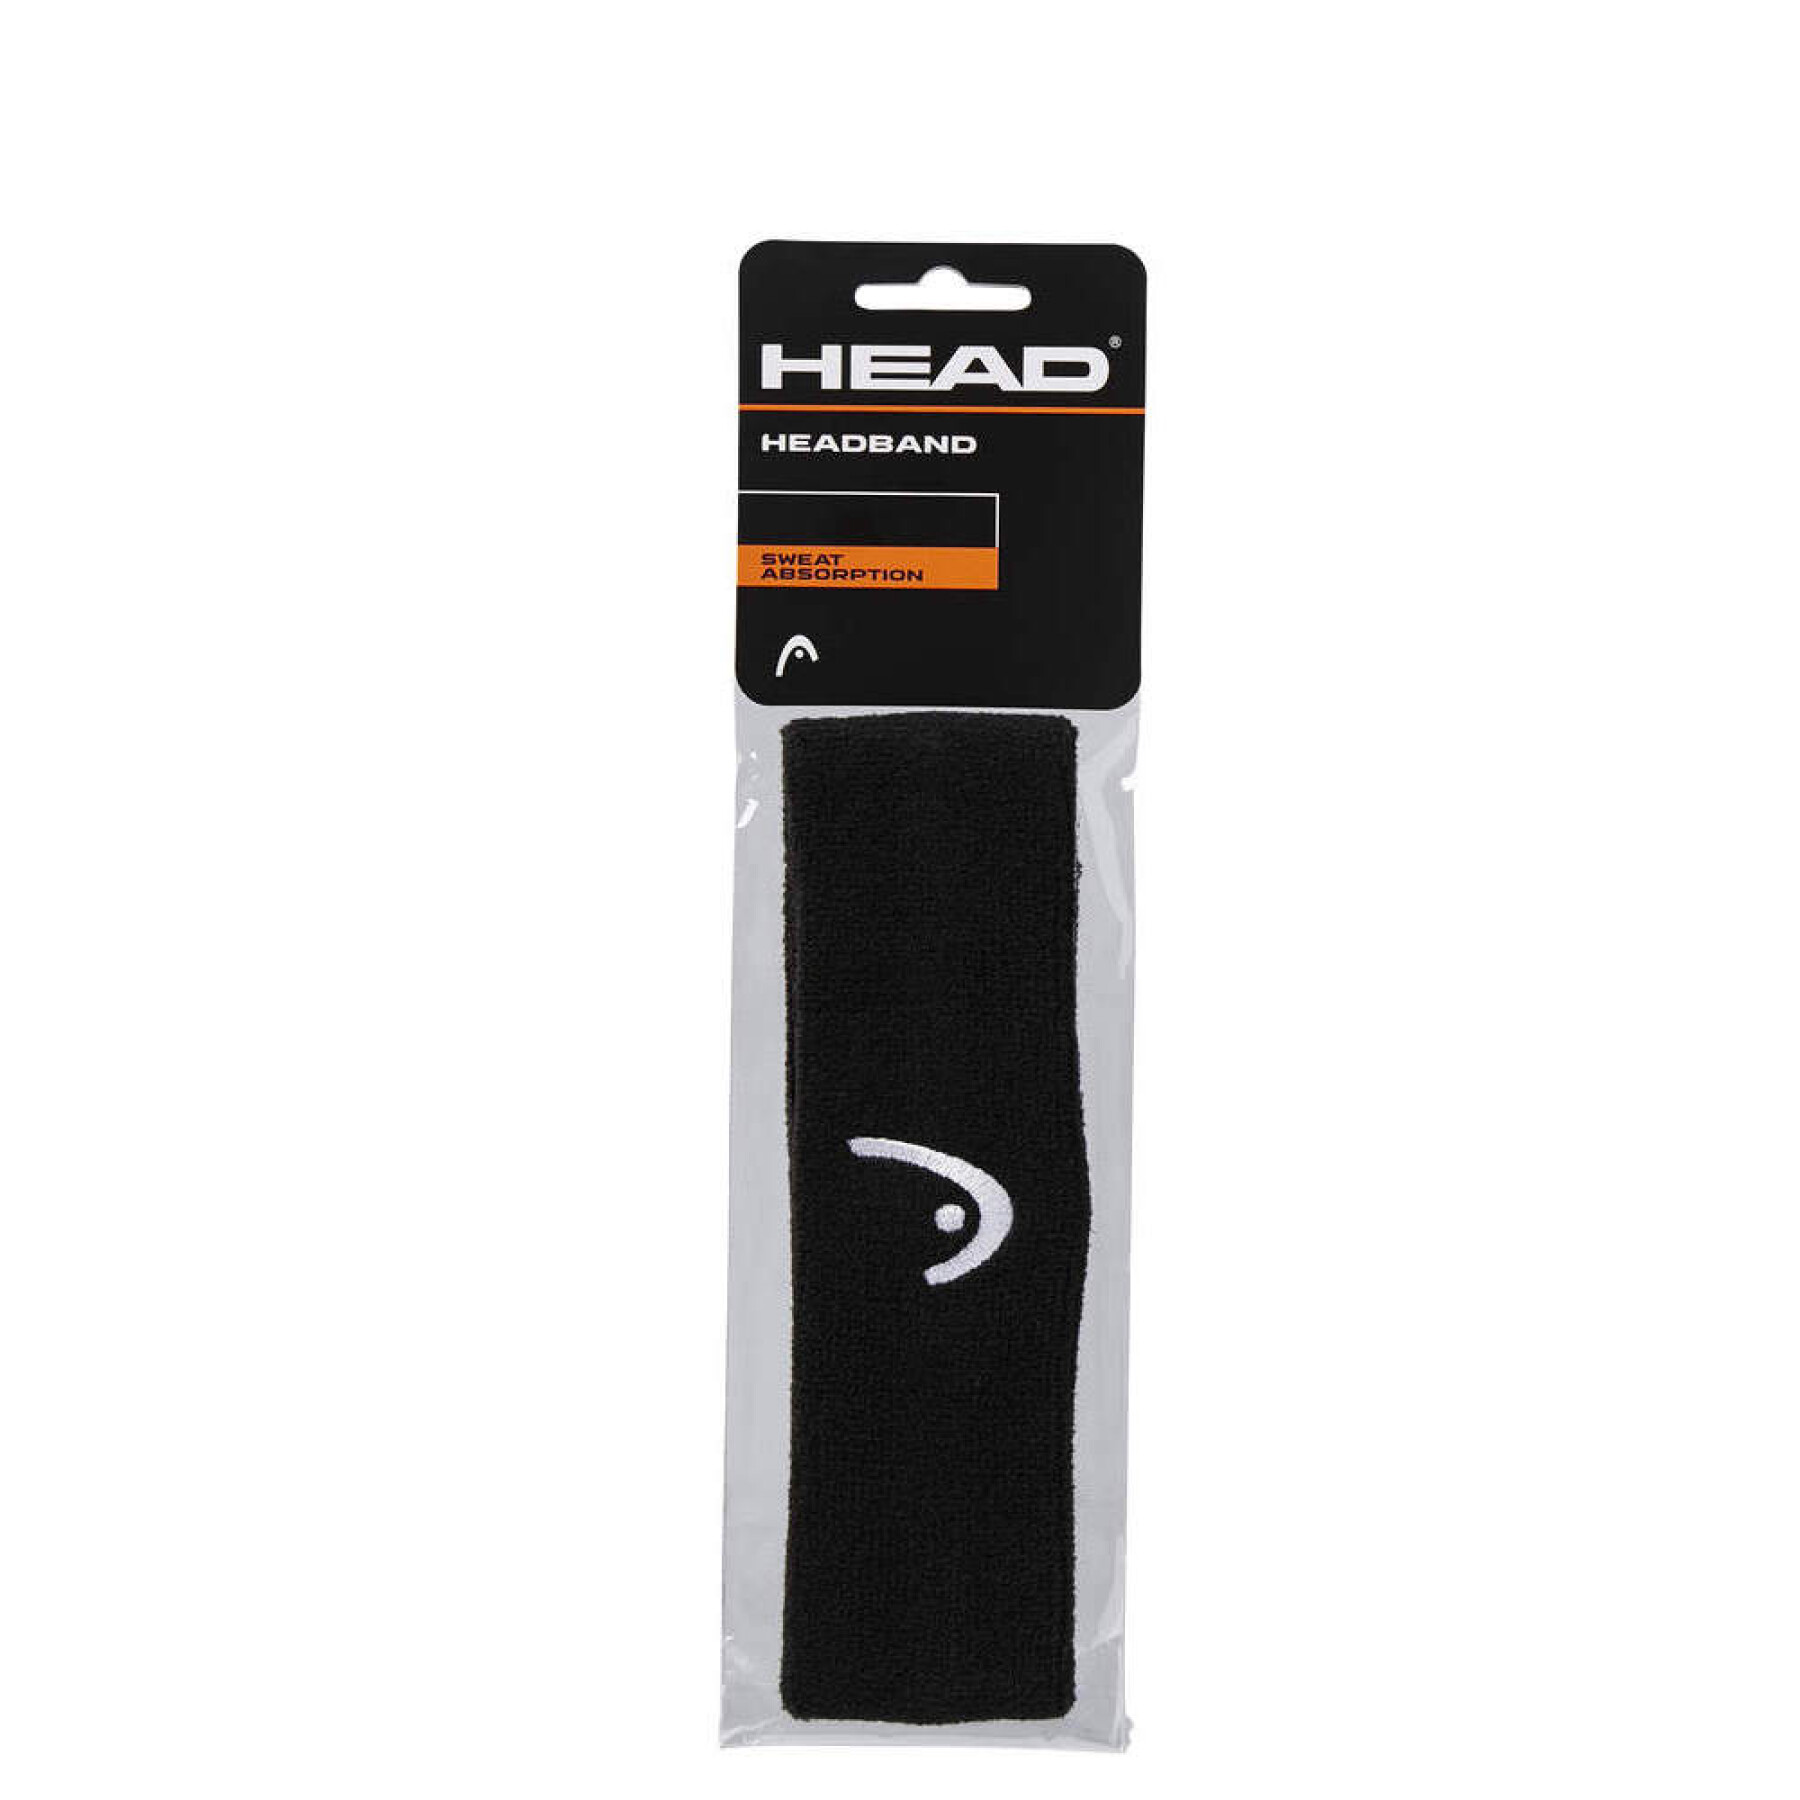 Hoofdband Head (x12)